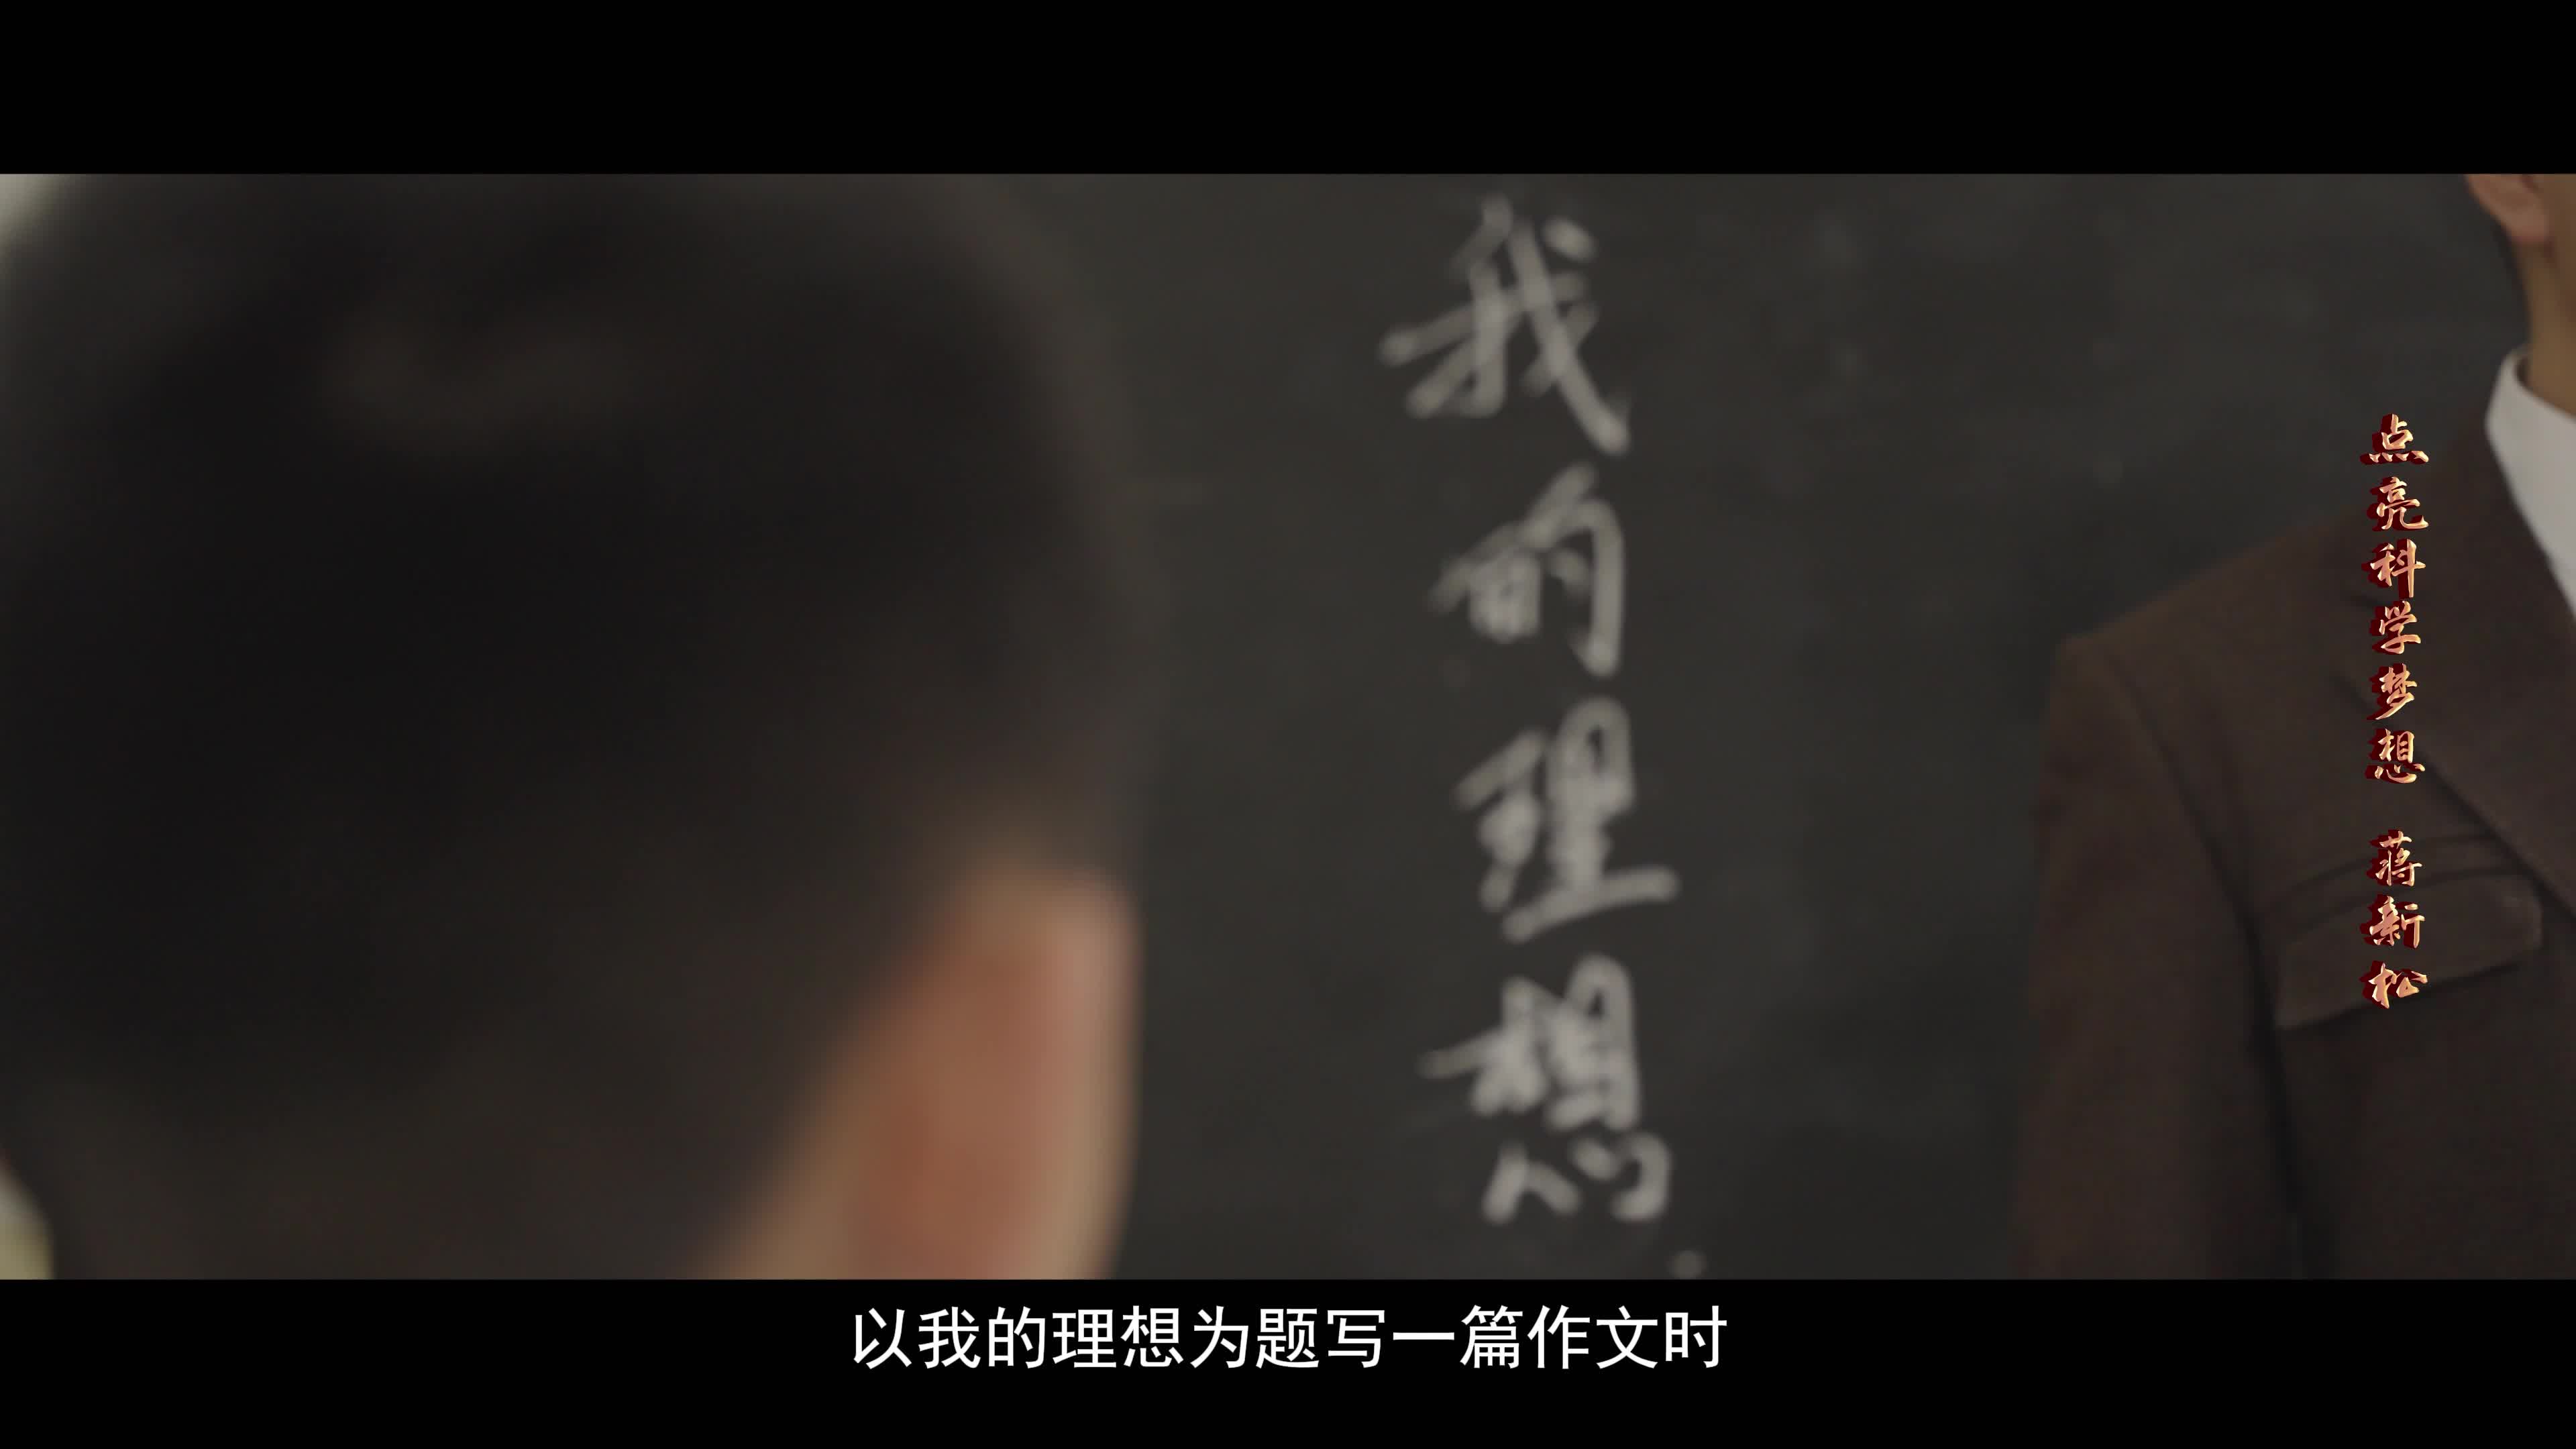 【点亮科学梦想】蒋新松——中国机器人之父